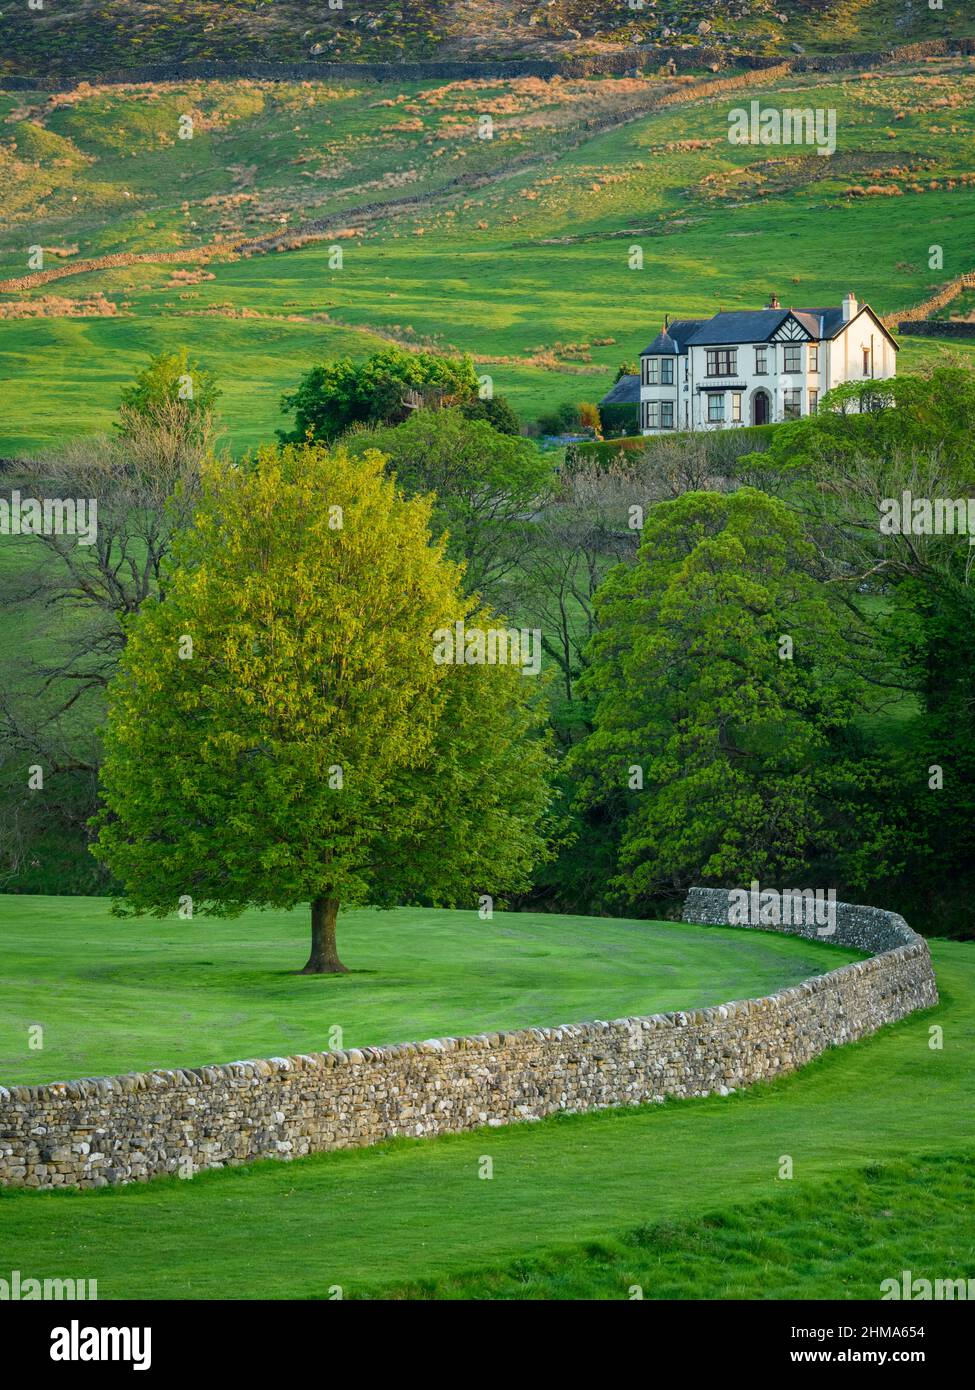 Paesaggio Wharfedale campagna (grande casa, pendii della valle, curvare muro di pietra a secco, pascoli e campi di terra verde alta) - Yorkshire Dales, Inghilterra Regno Unito. Foto Stock